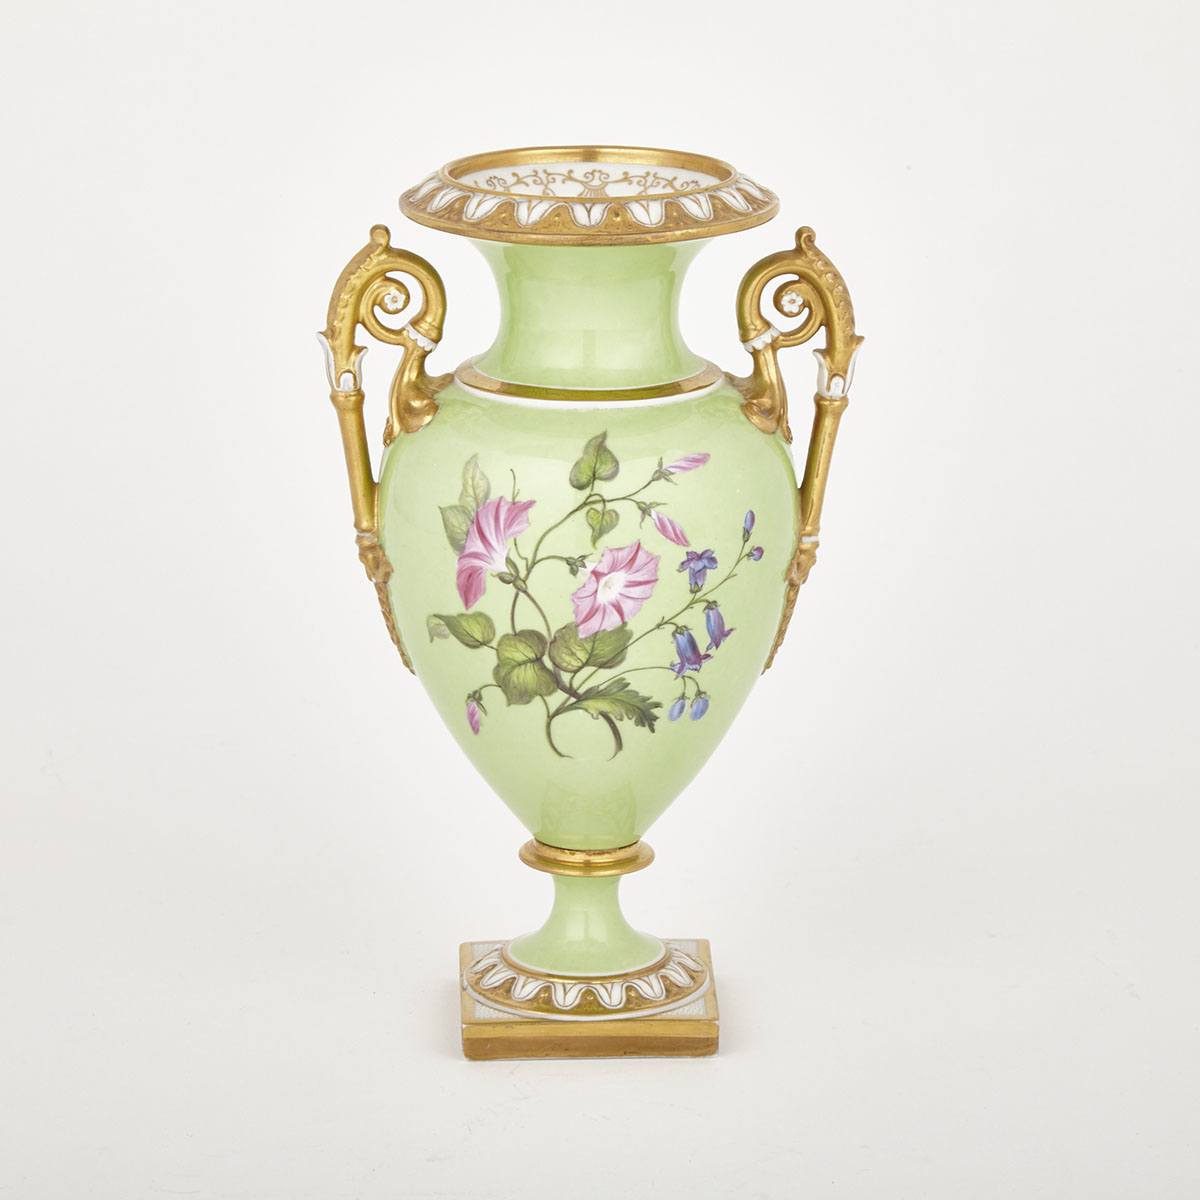 Flight, Barr & Barr Worcester Two-Handled Vase, c.1813-40